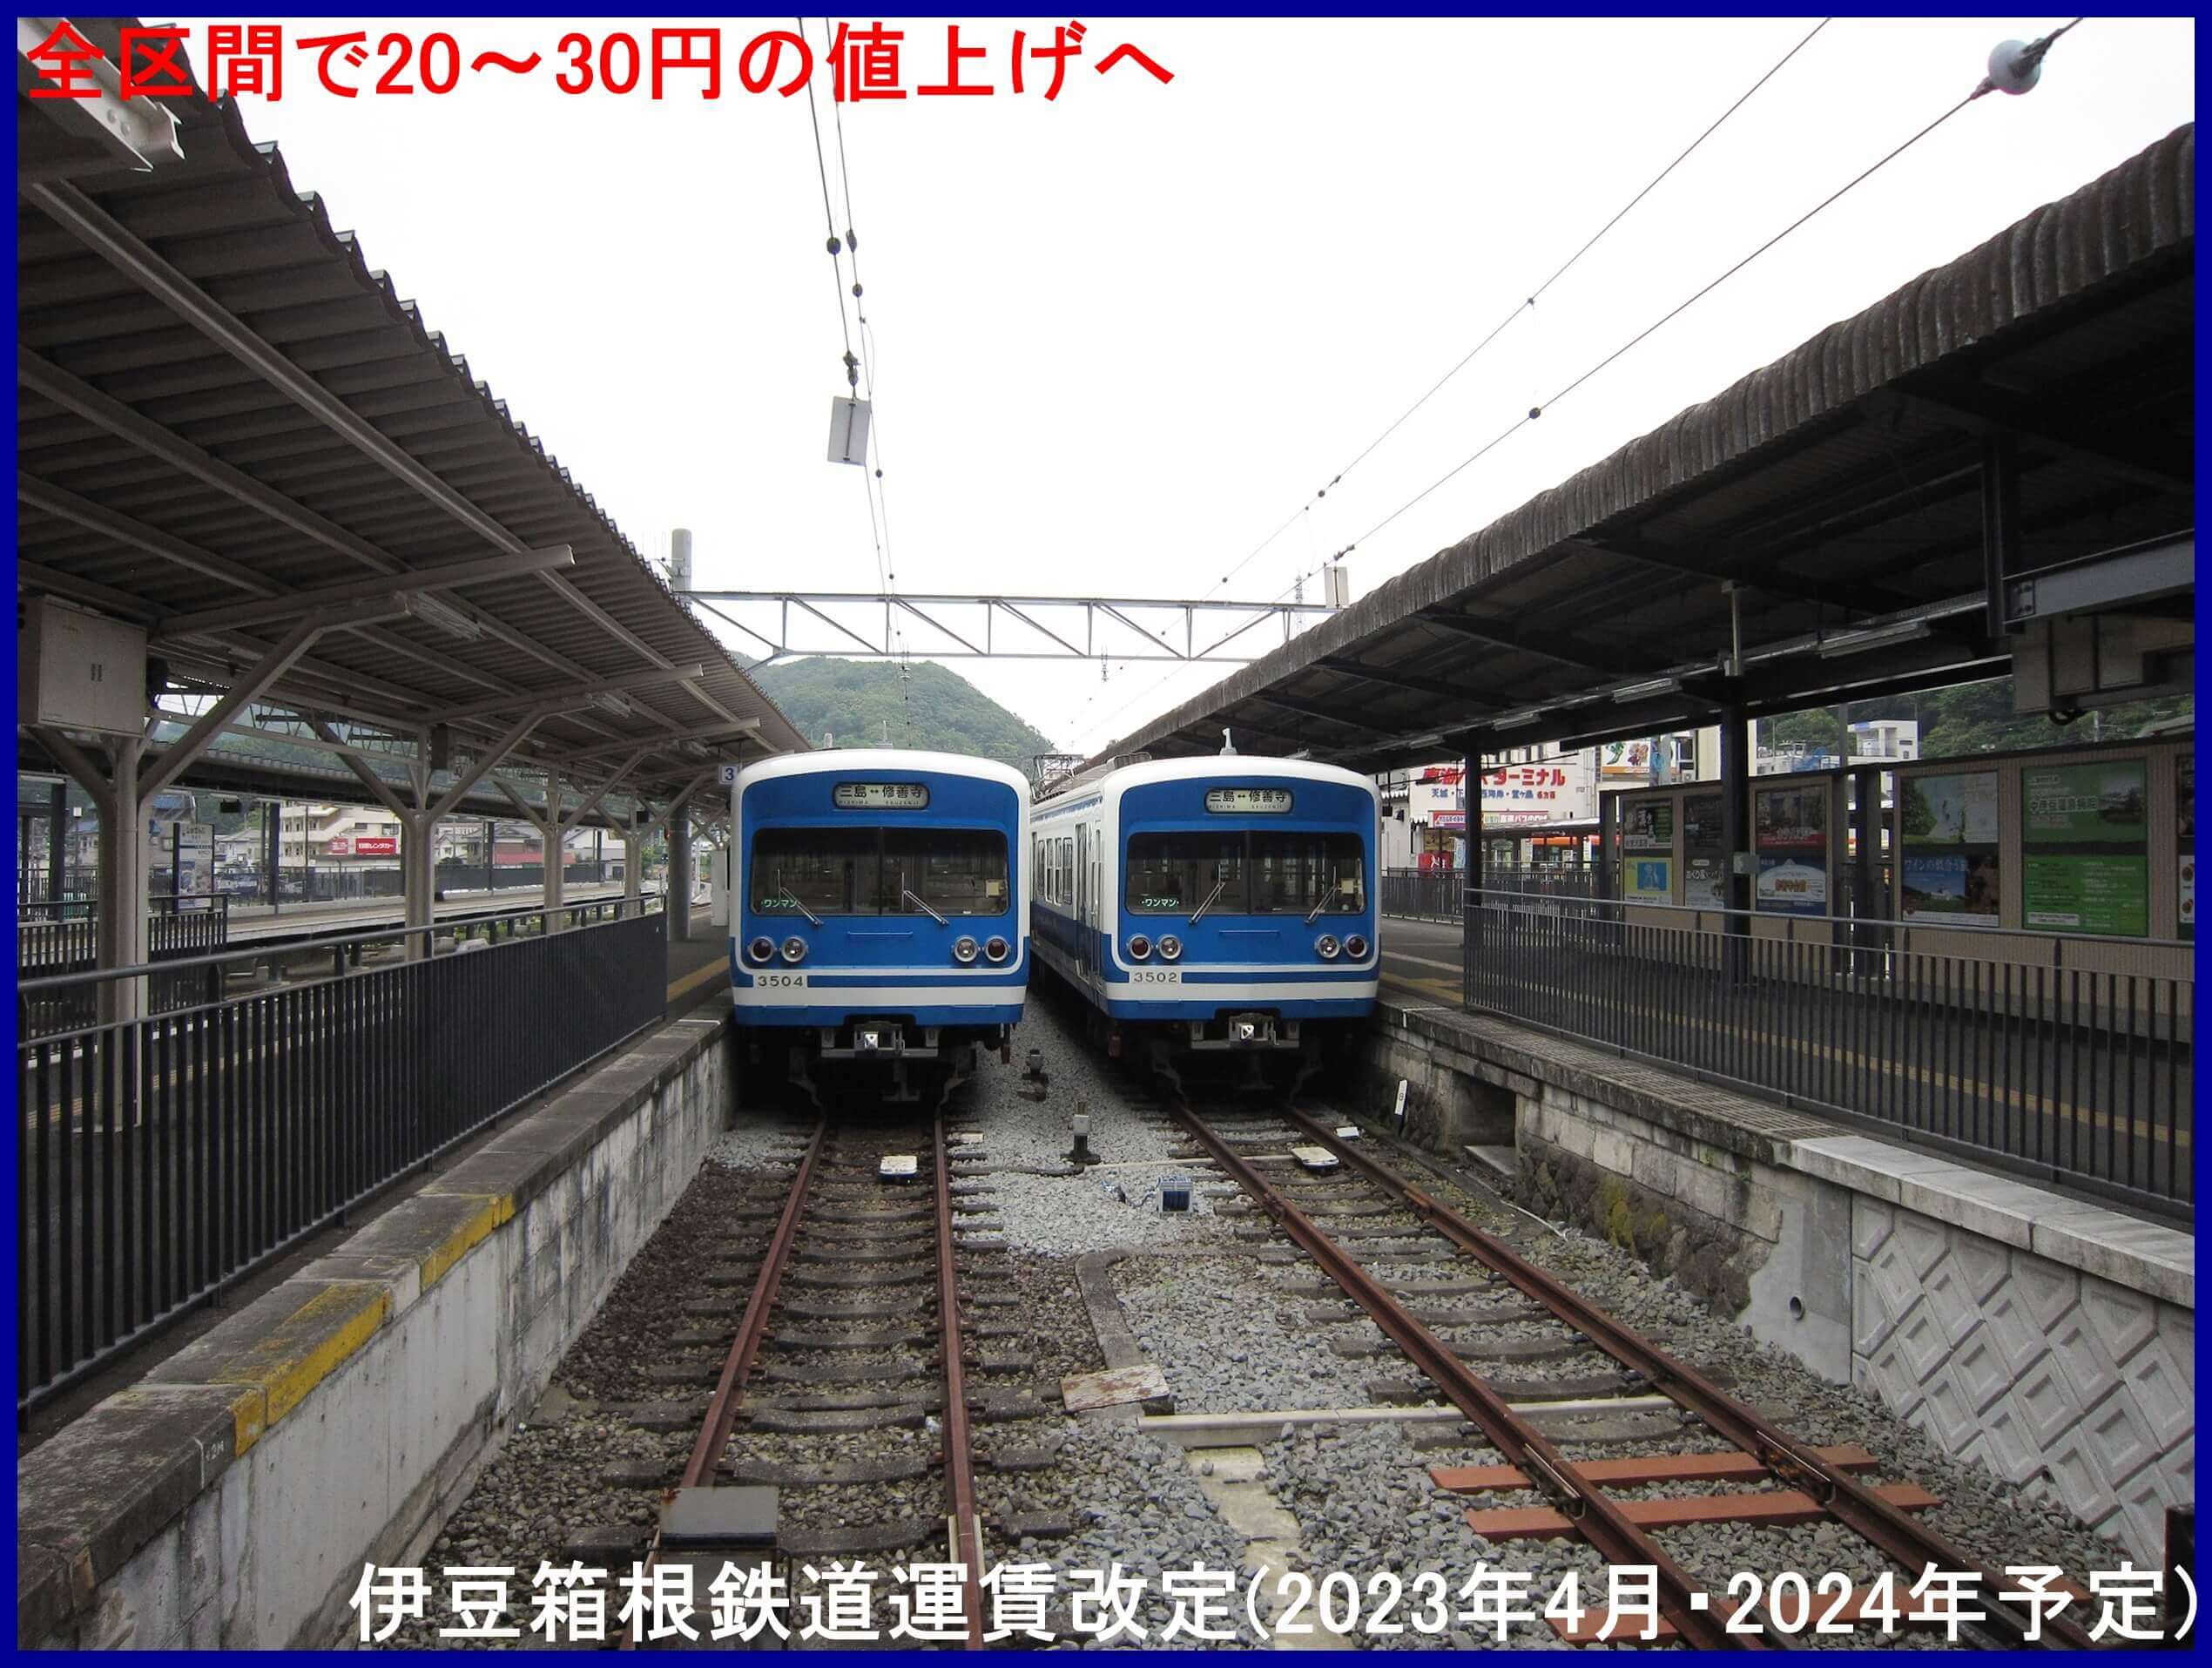 全区間で20～30円の値上げへ　伊豆箱根鉄道運賃改定(2023年4月・2024年予定)